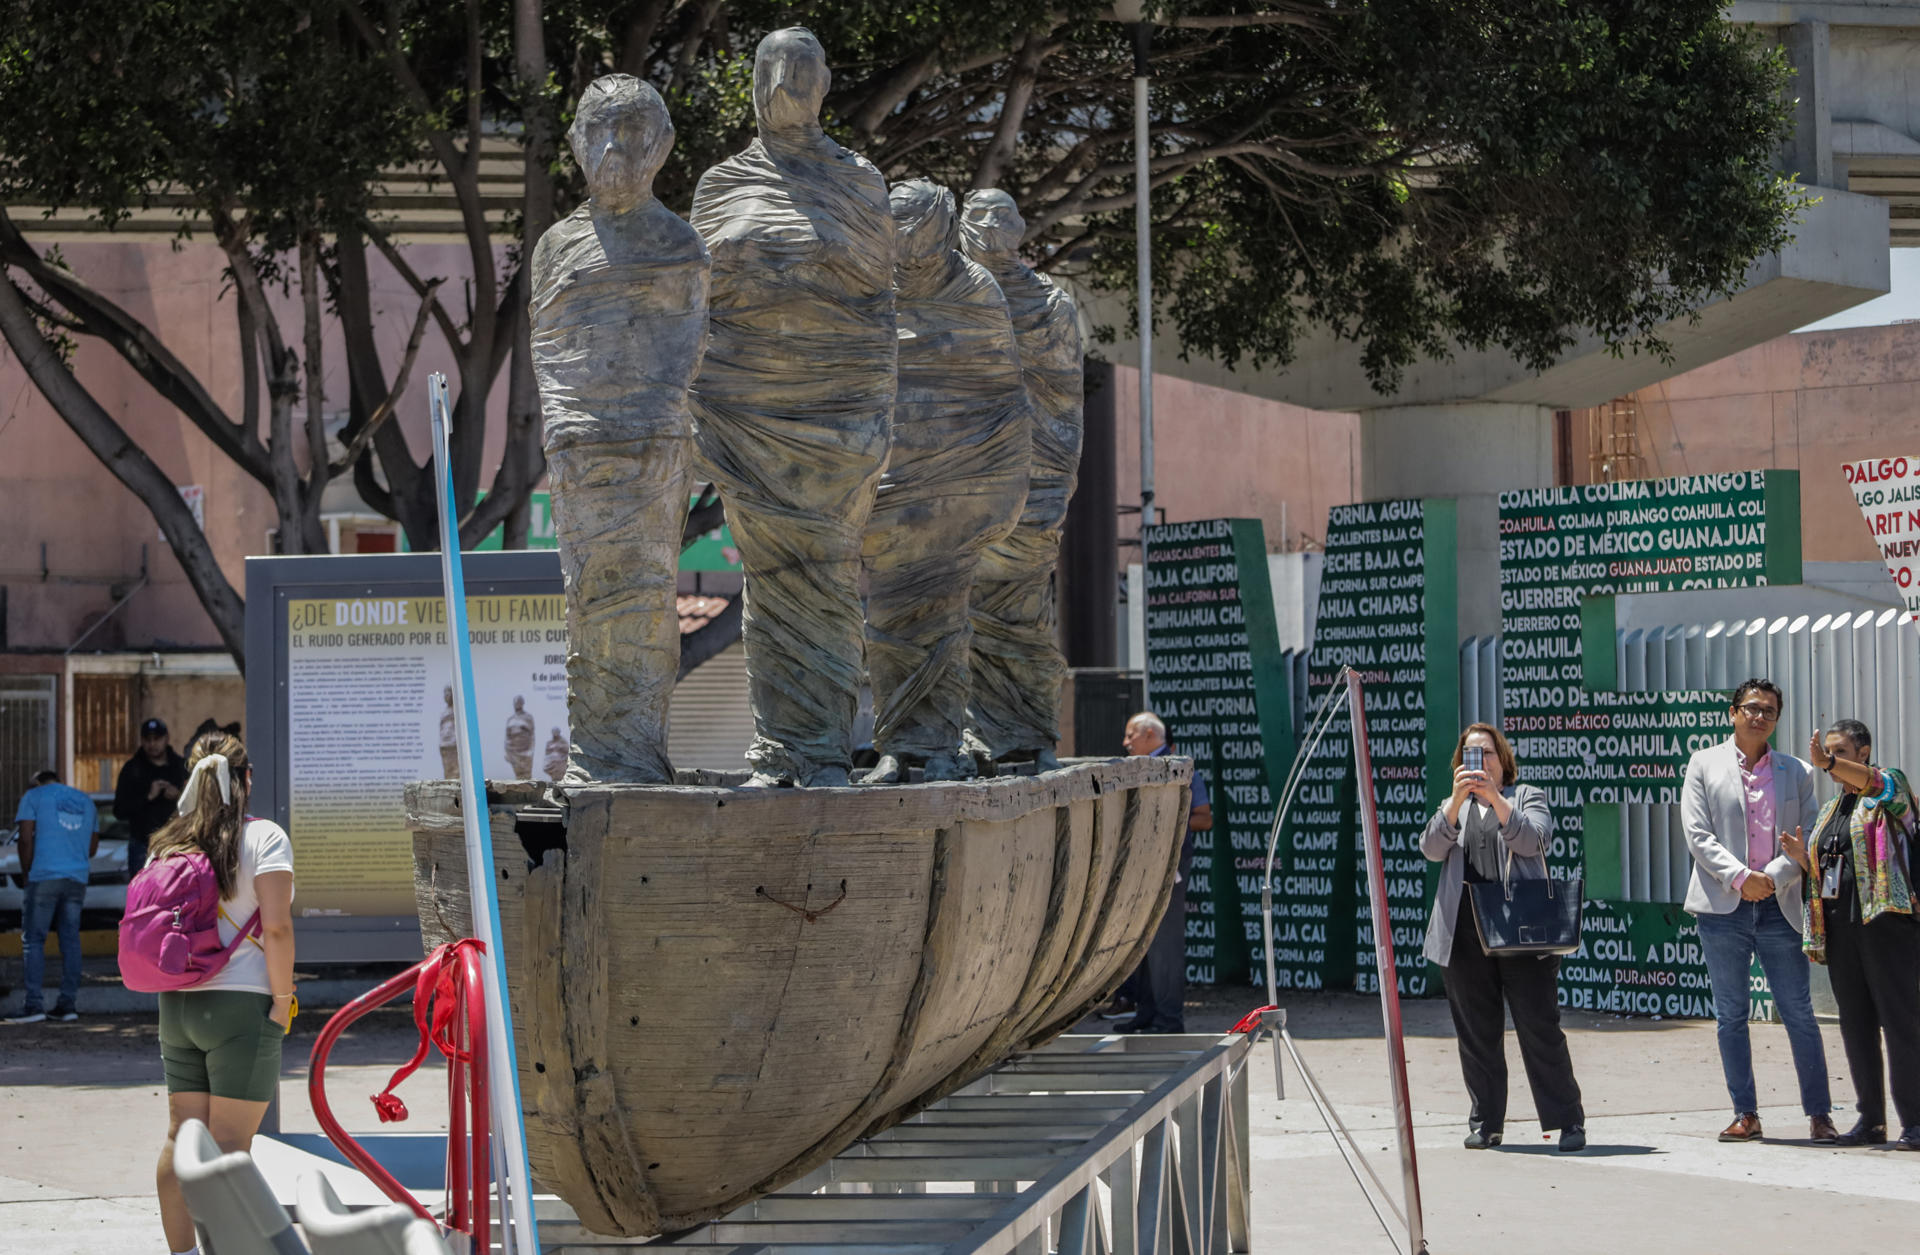 La escultura de cuatro migrantes en una balsa reivindica derechos en la frontera de México